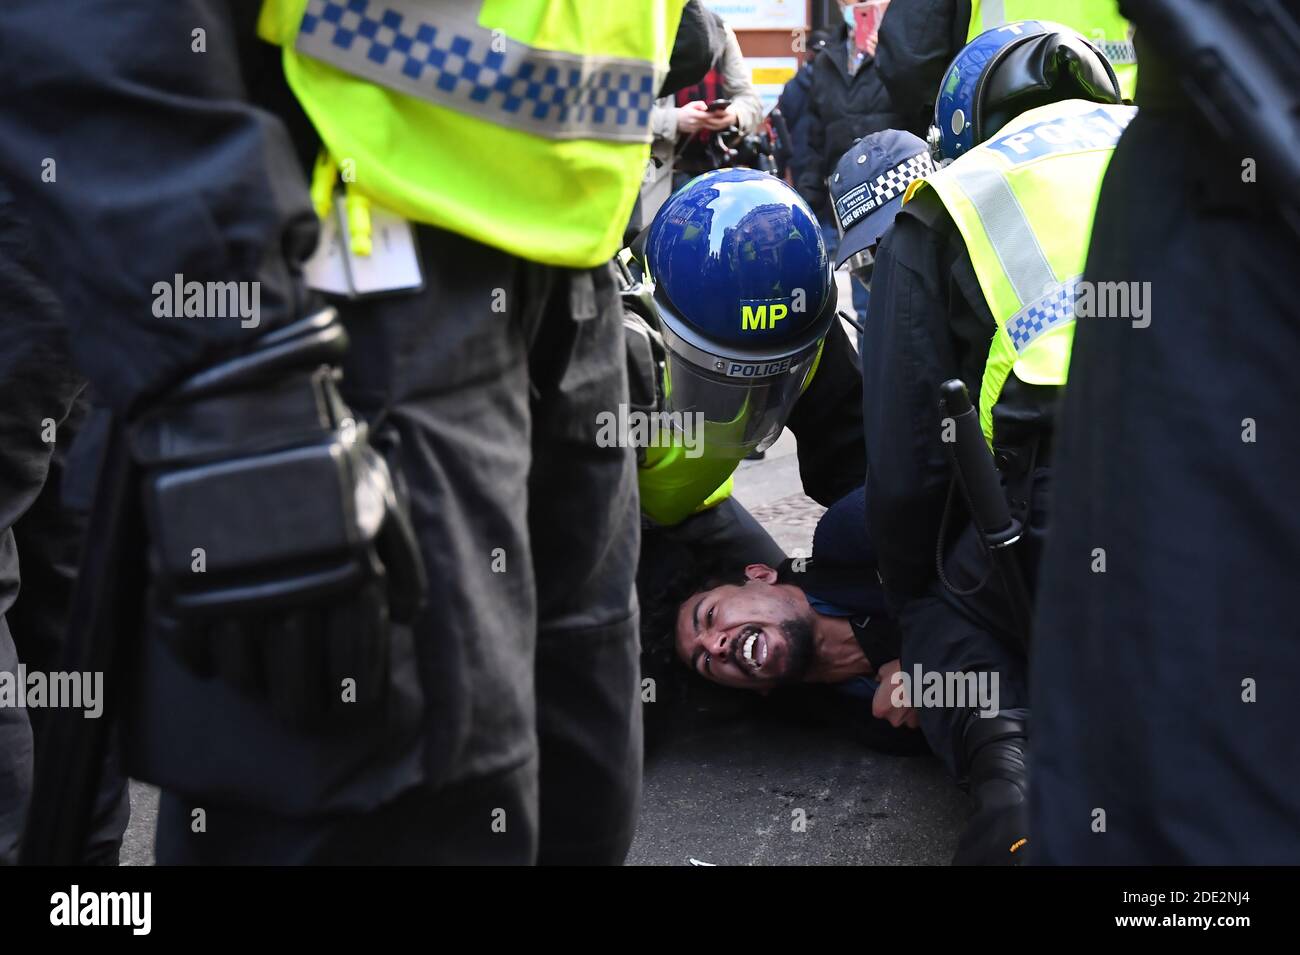 La police a emprisonné un homme lors d'une manifestation anti-verrouillage à Oxford Circus, Londres. Banque D'Images